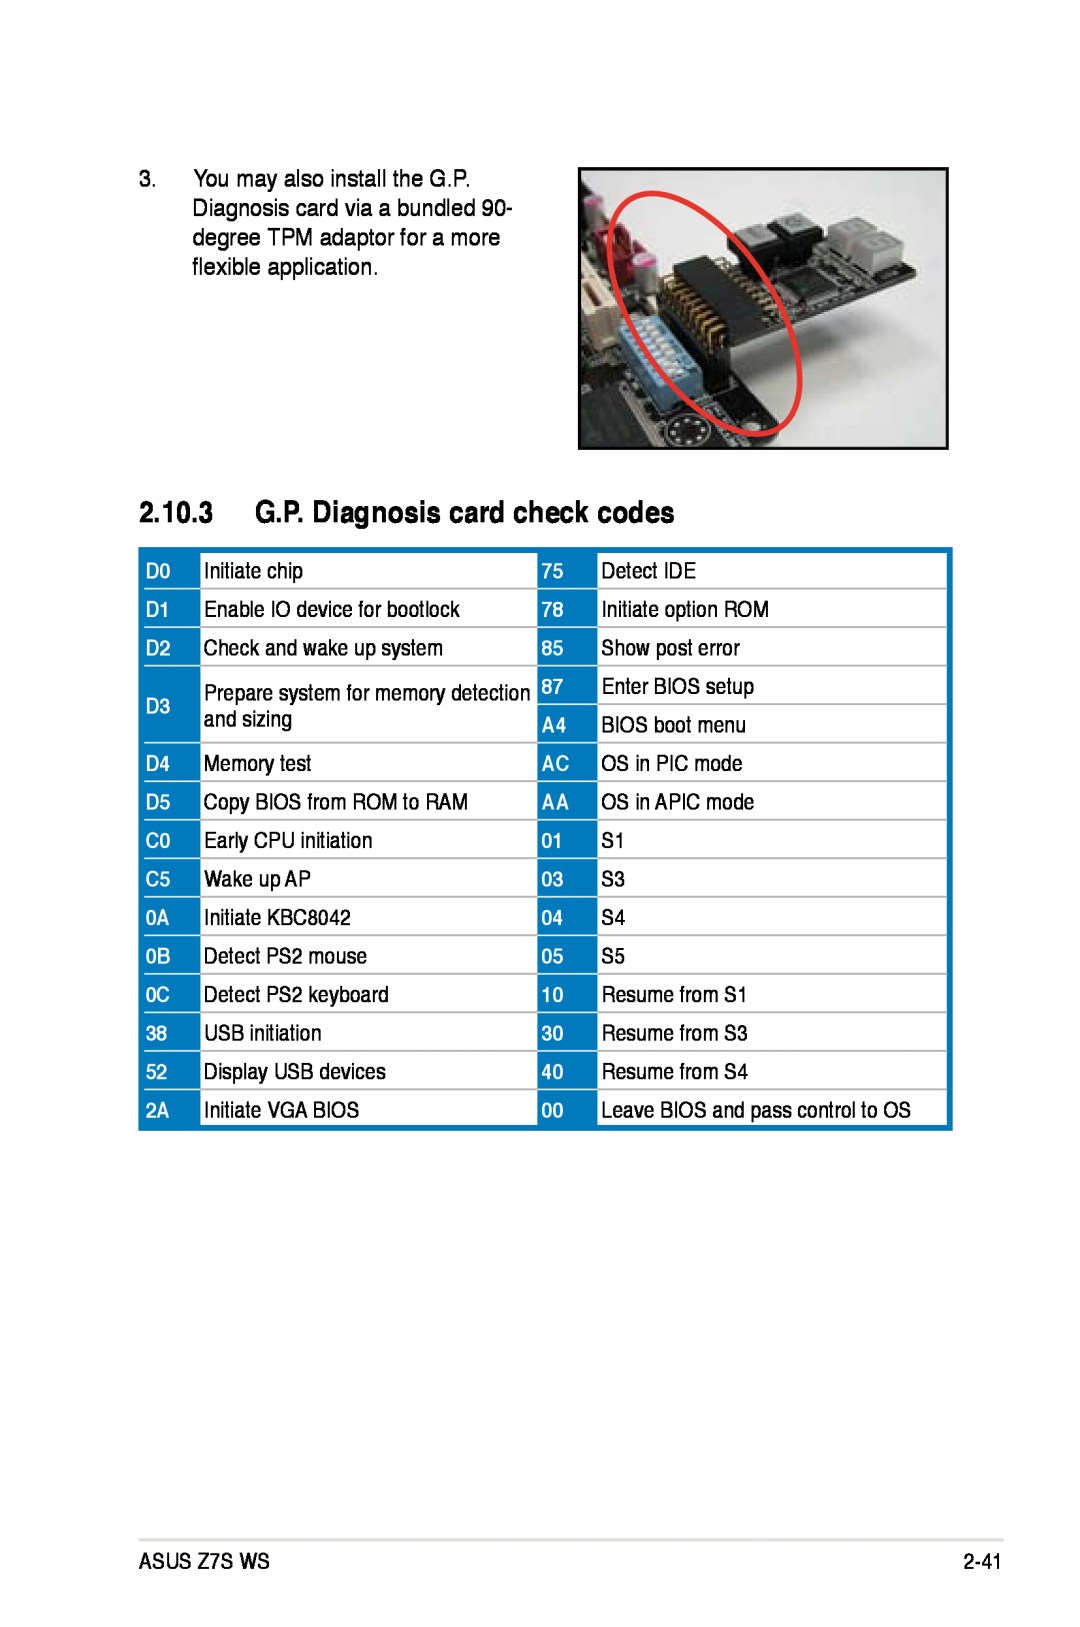 Asus Z7S WS manual 2.10.3 G.P. Diagnosis card check codes 